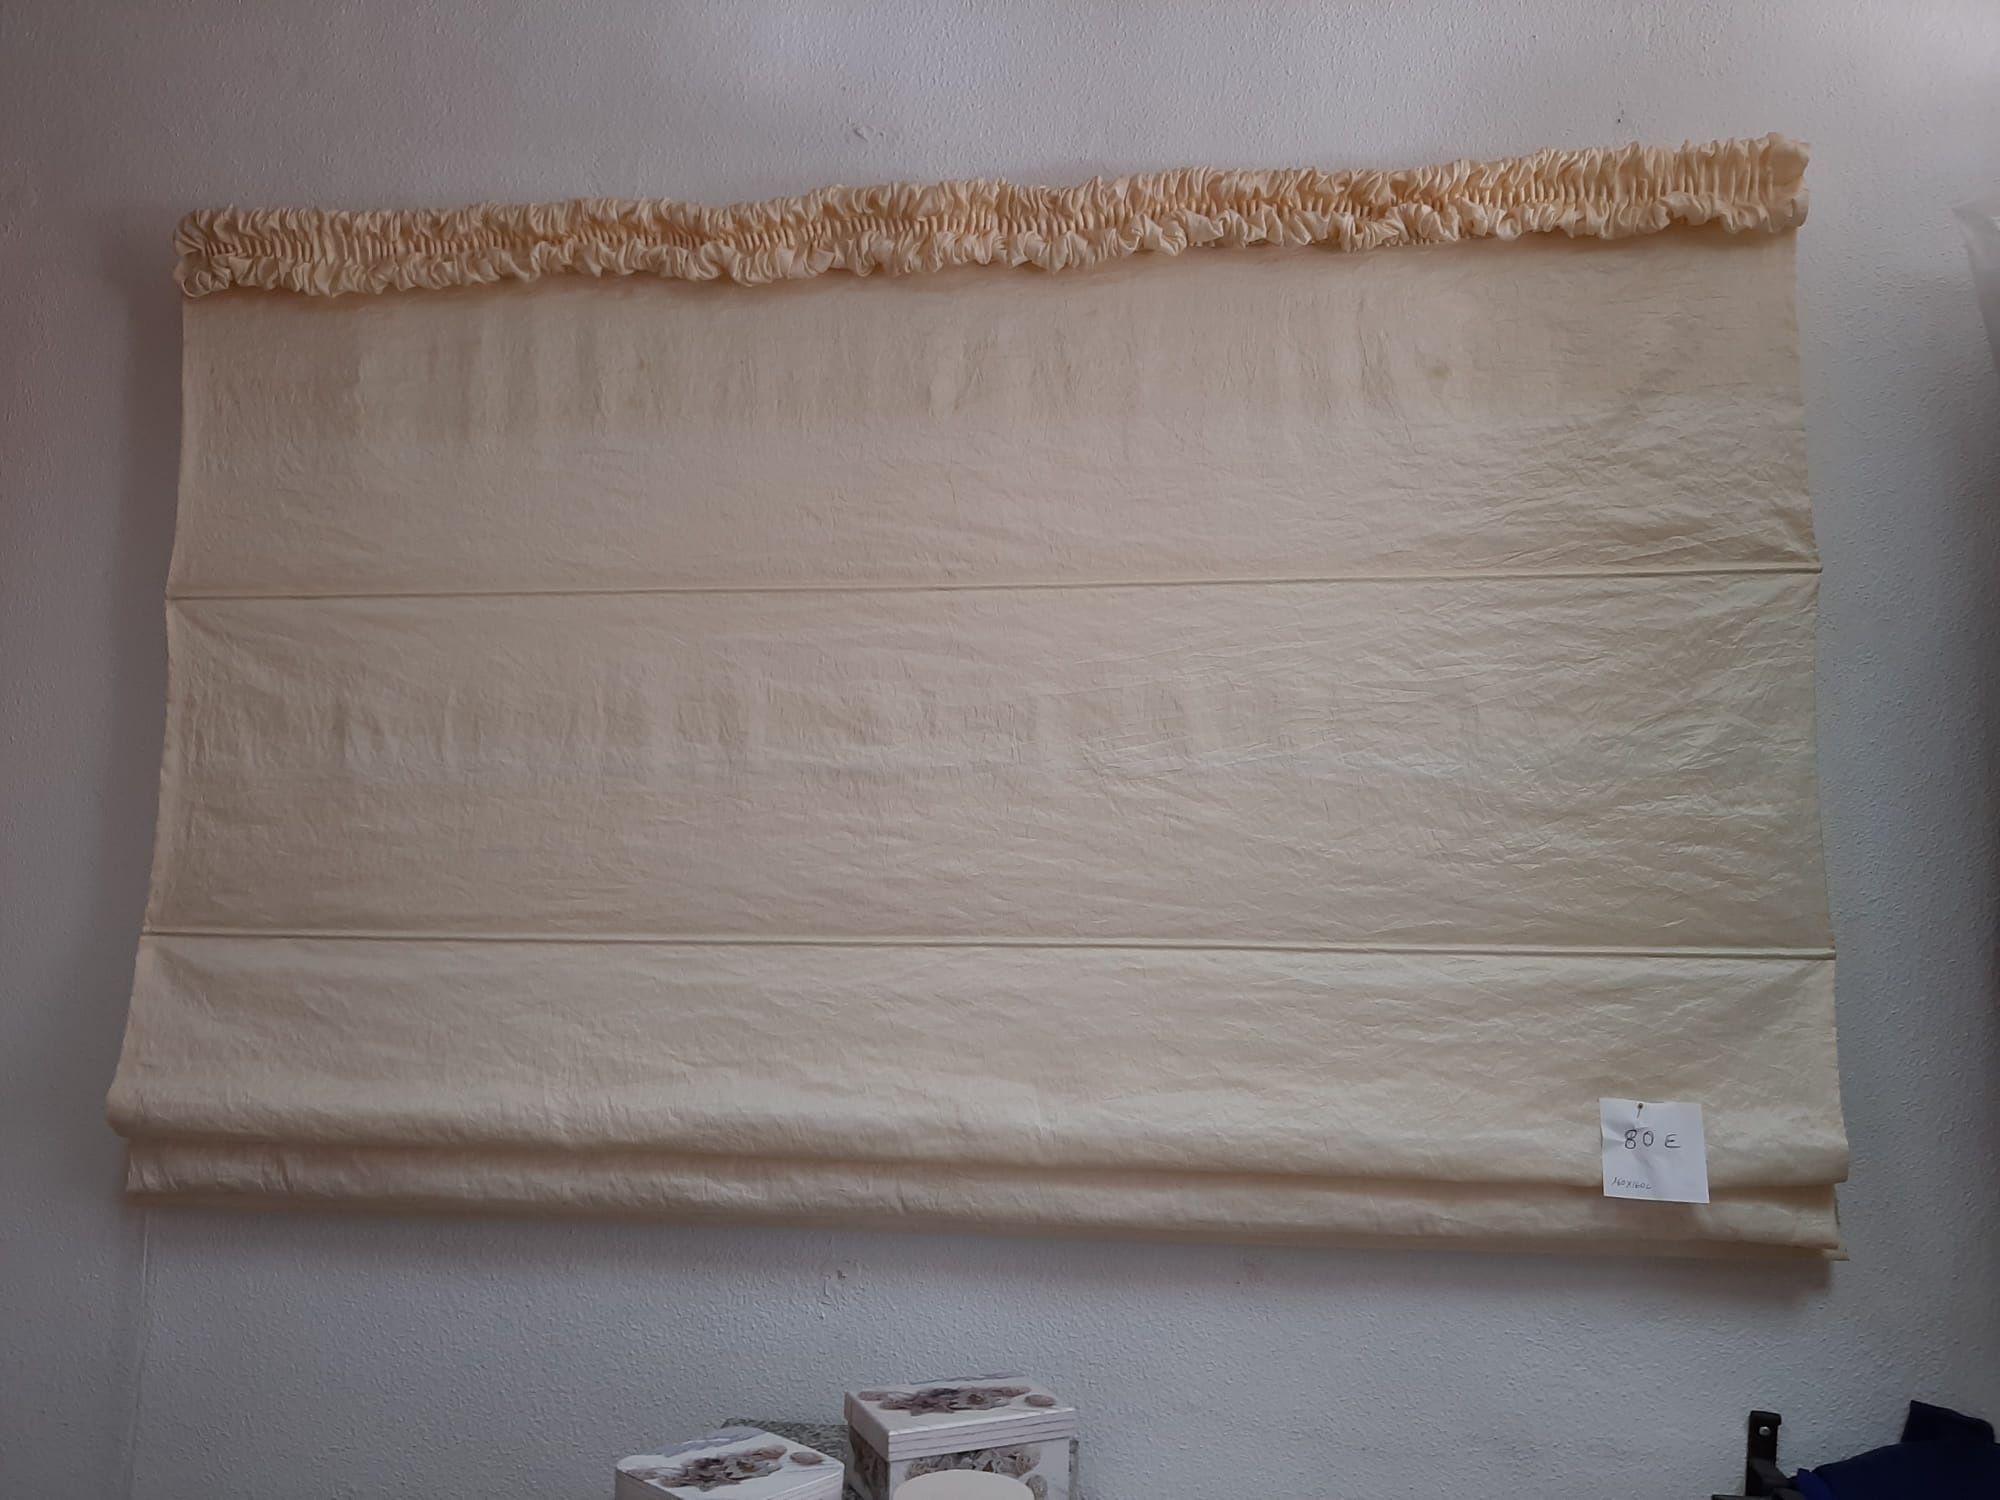 Japonês em crepom de seda 1,60m x 1,60m